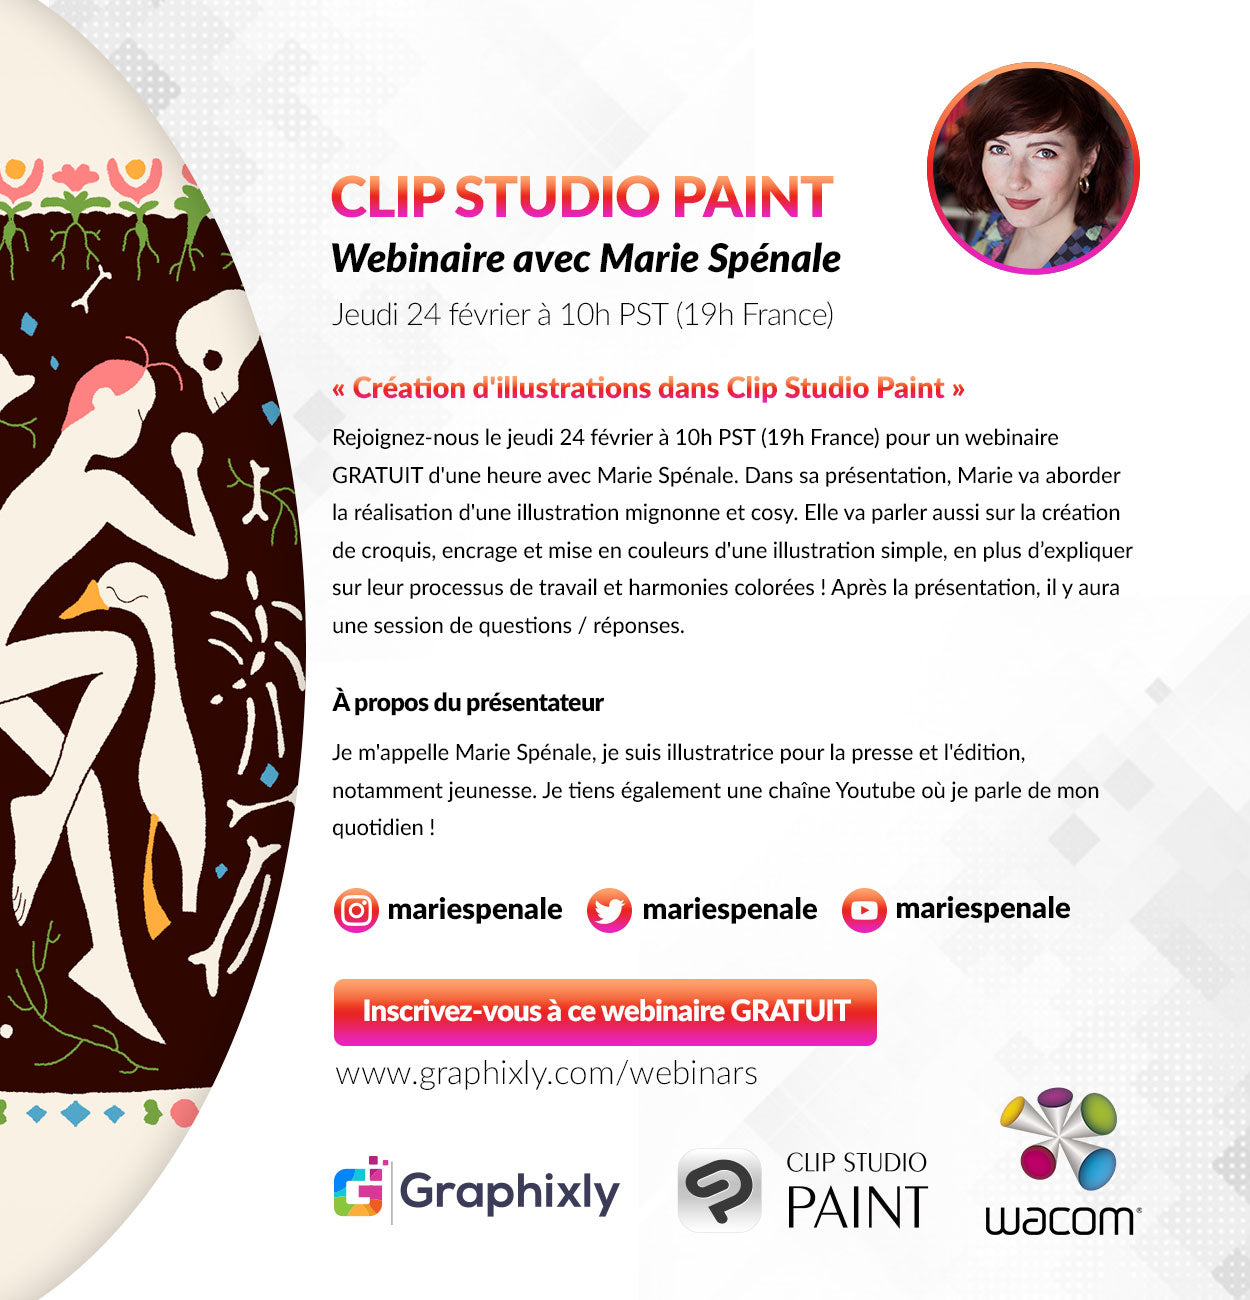 Webinar (Français) - Création d'illustrations dans Clip Studio Paint avec Marie Spénale